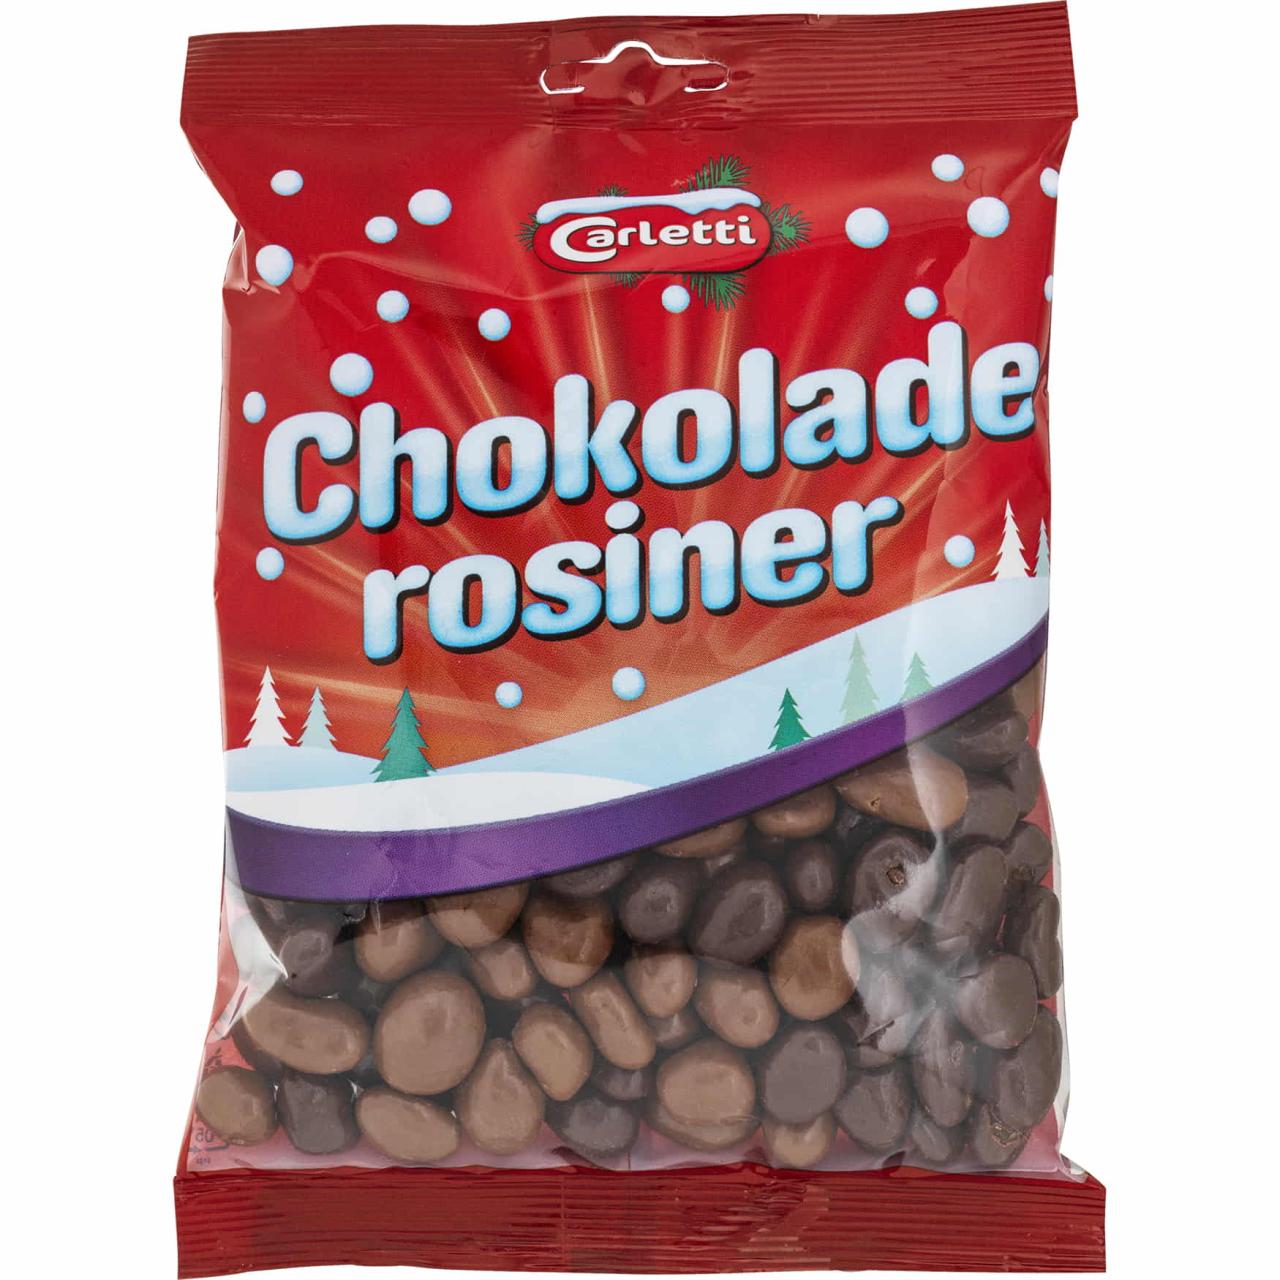 Carletti Chokoladerosiner 290g